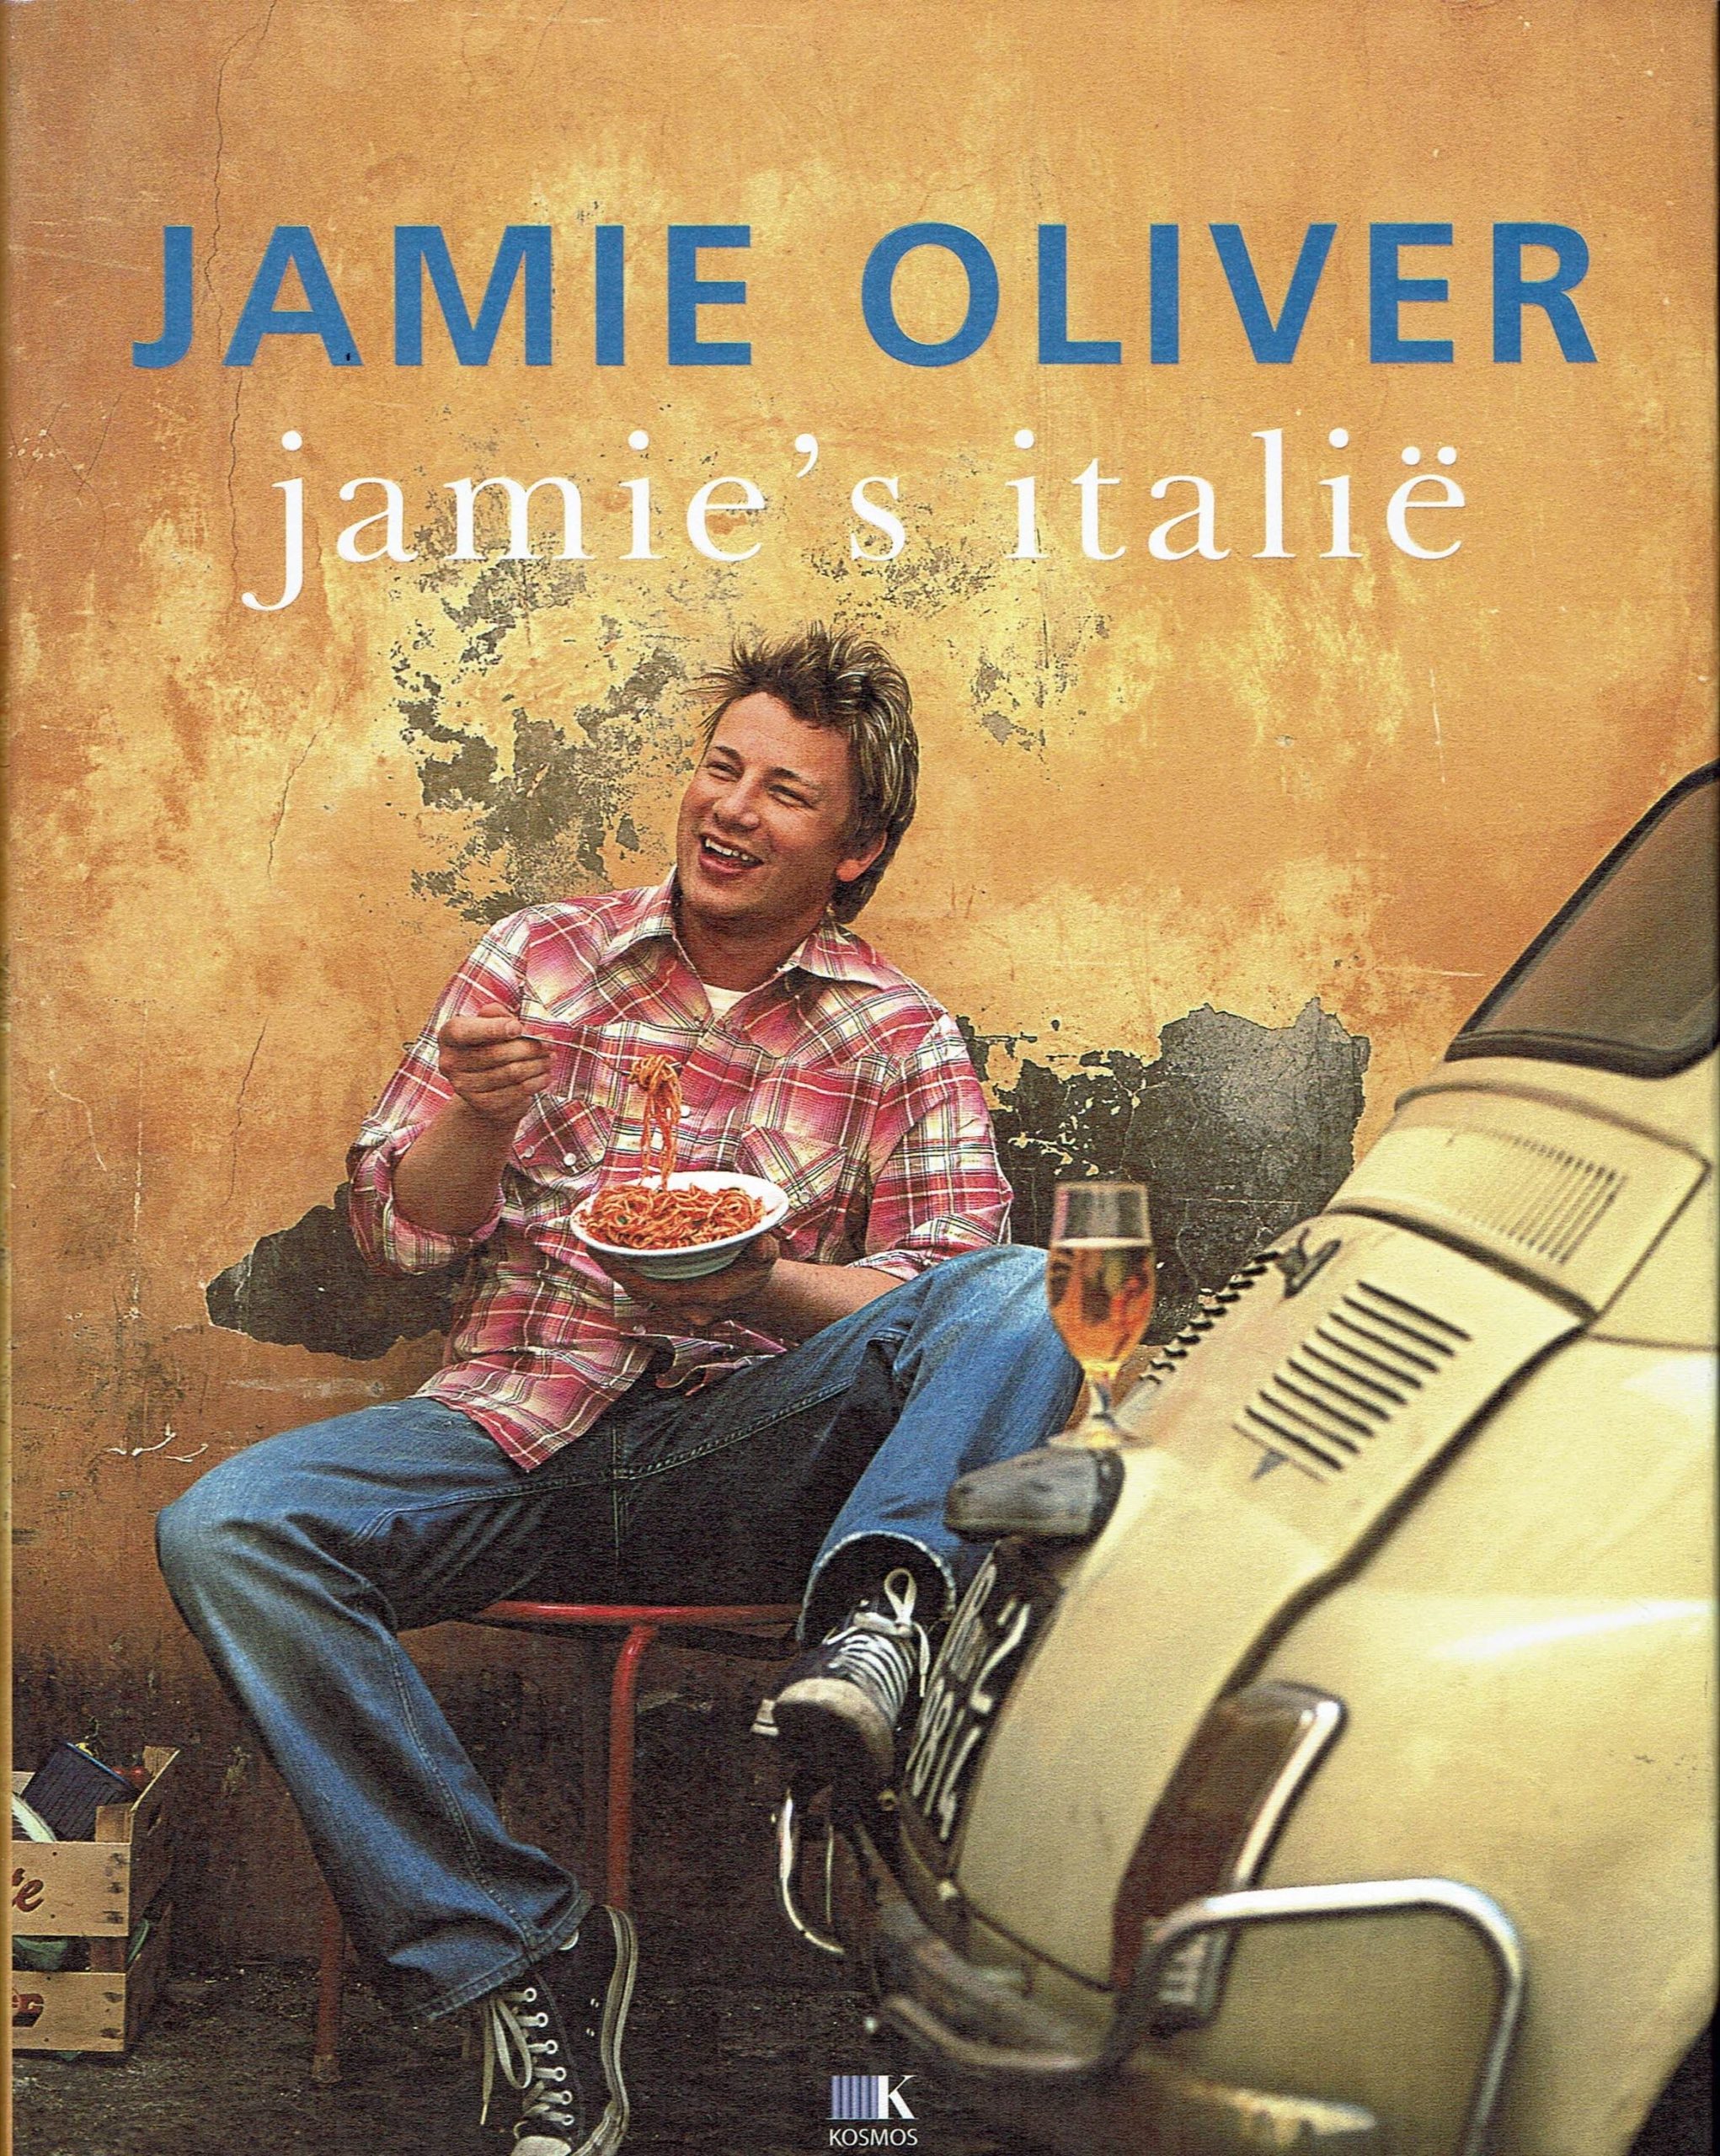 Oom of meneer Daarbij elke dag Jamie's Italie – Jamie Oliver, NIEUW | What's New Today?